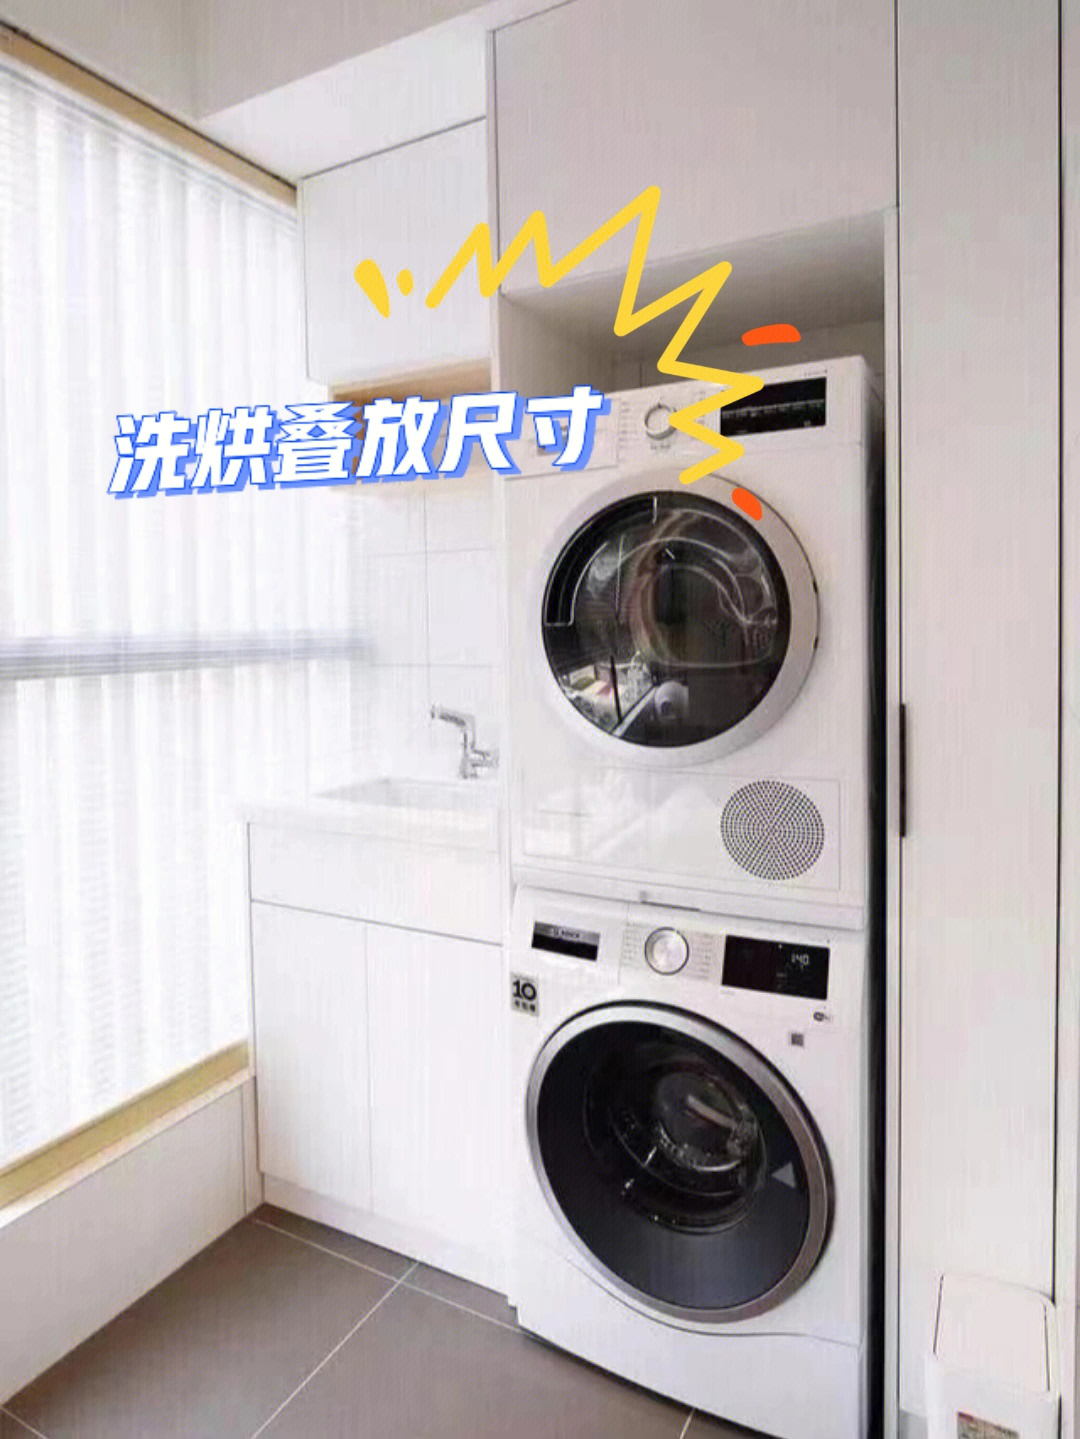 洗衣机干衣机叠放利弊图片